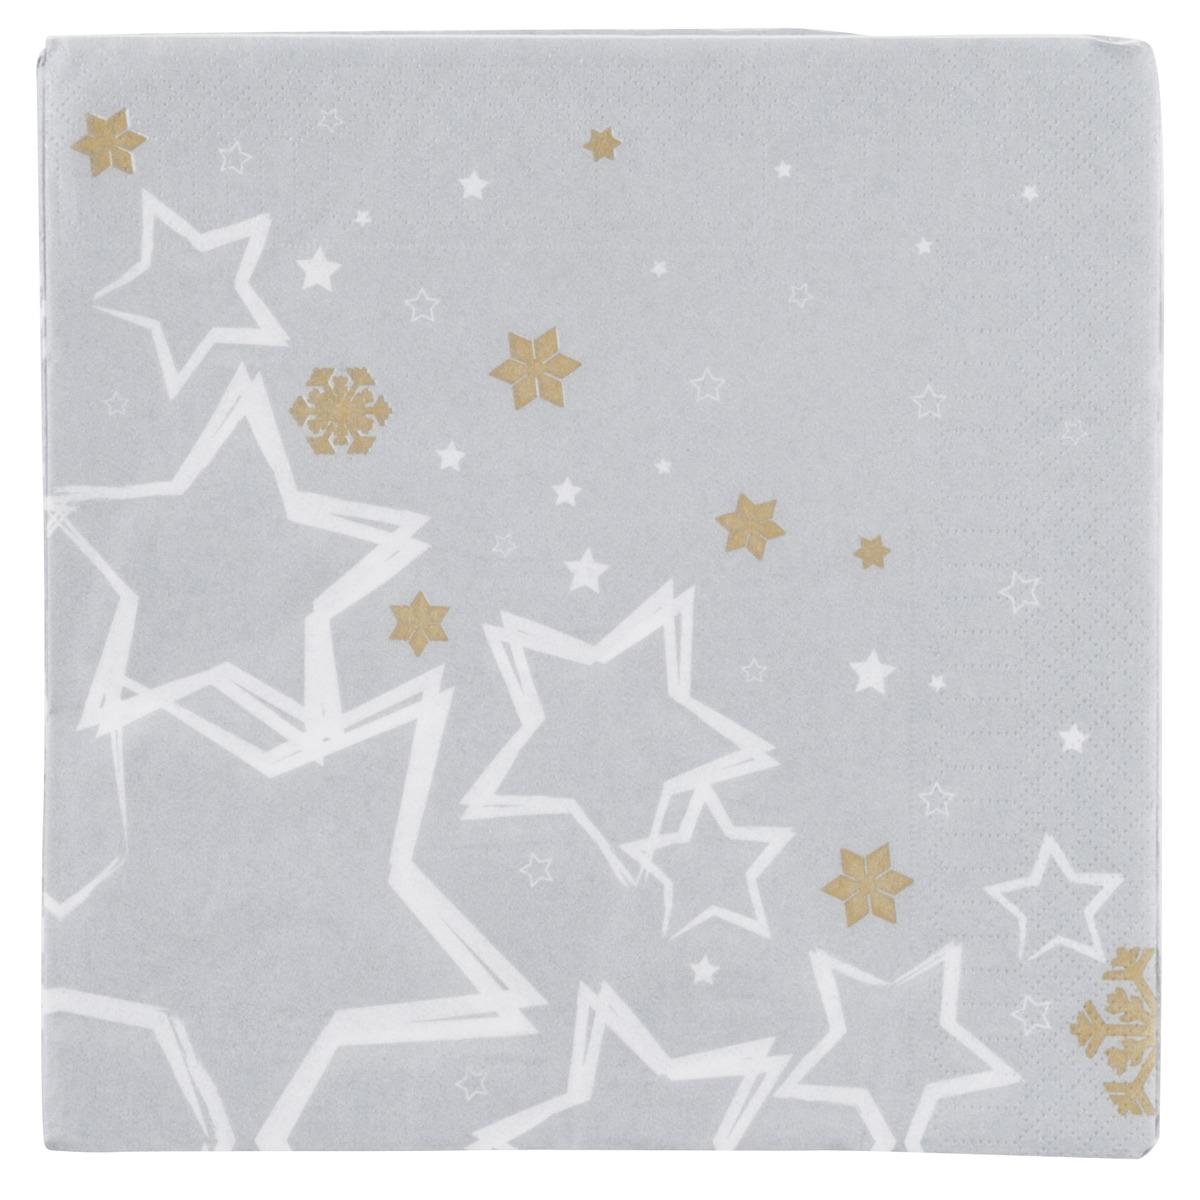 Lot de 20 serviettes en papier imprimé étoiles - 40 x 40 cm - Blanc et argenté